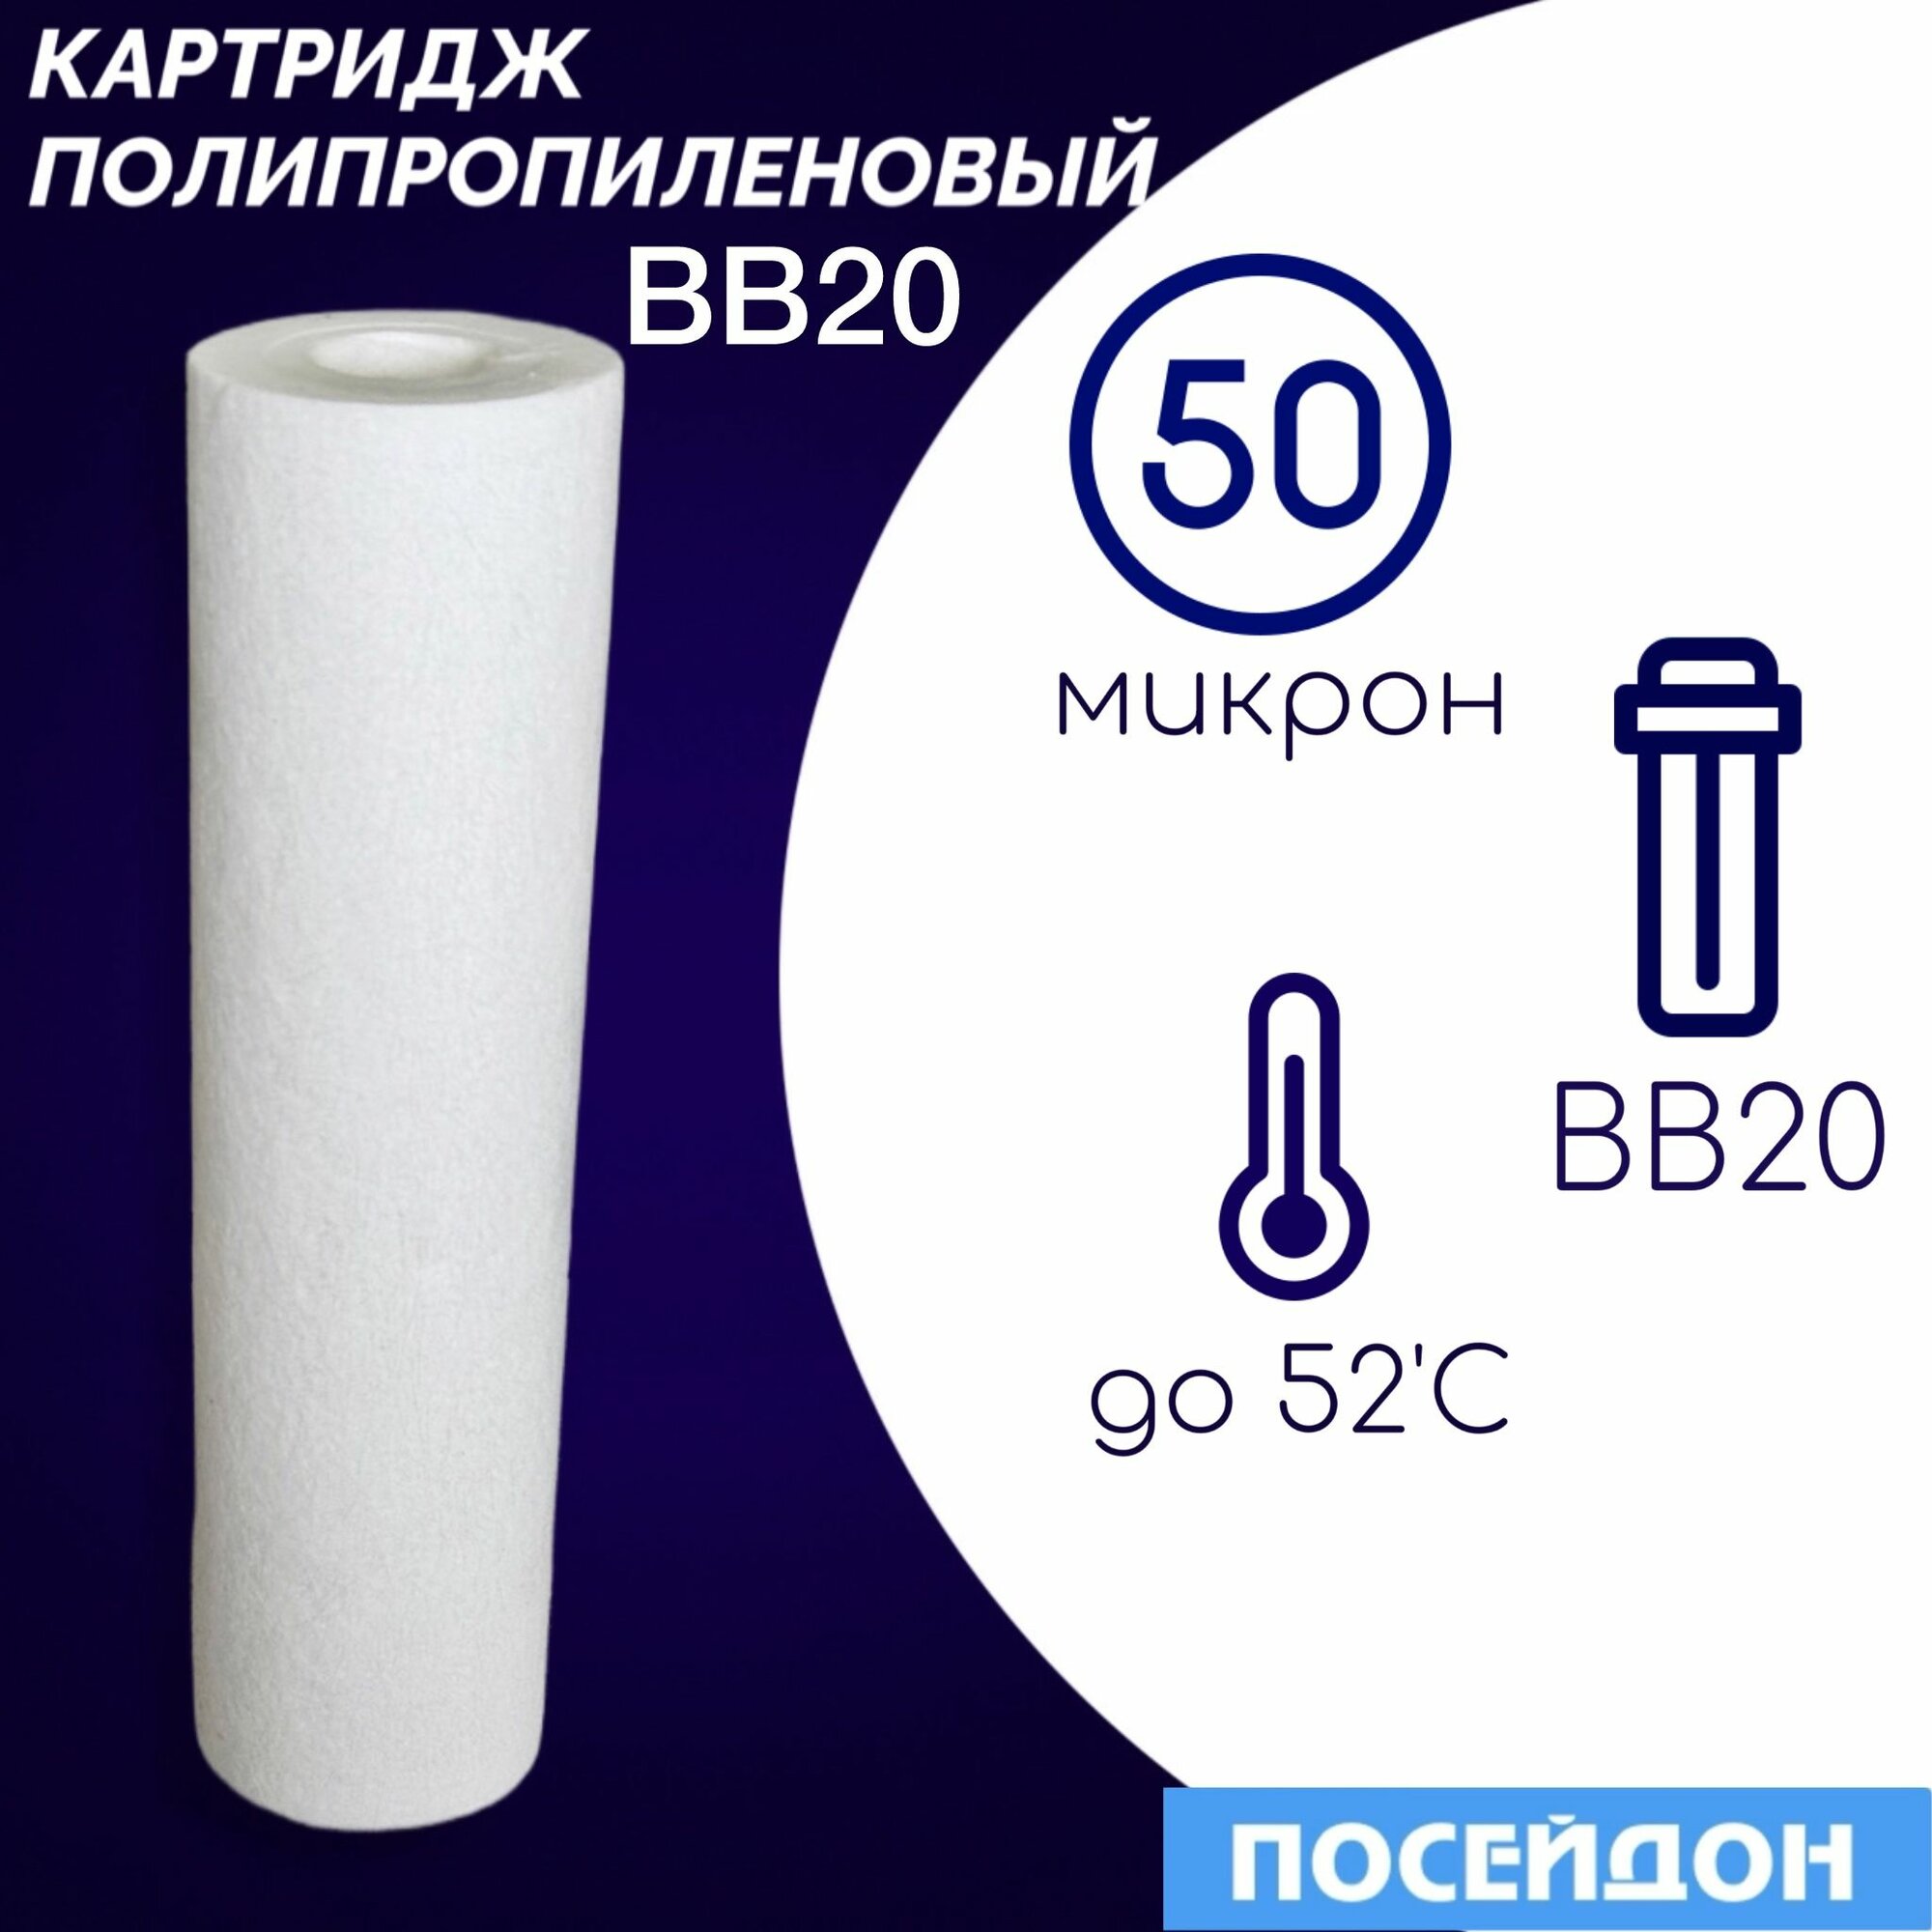 Картридж полипропиленовый ЭФГ 112/508(1шт) 50 мкм элемент фильтрующий BigBlue20. Фильтр для воды